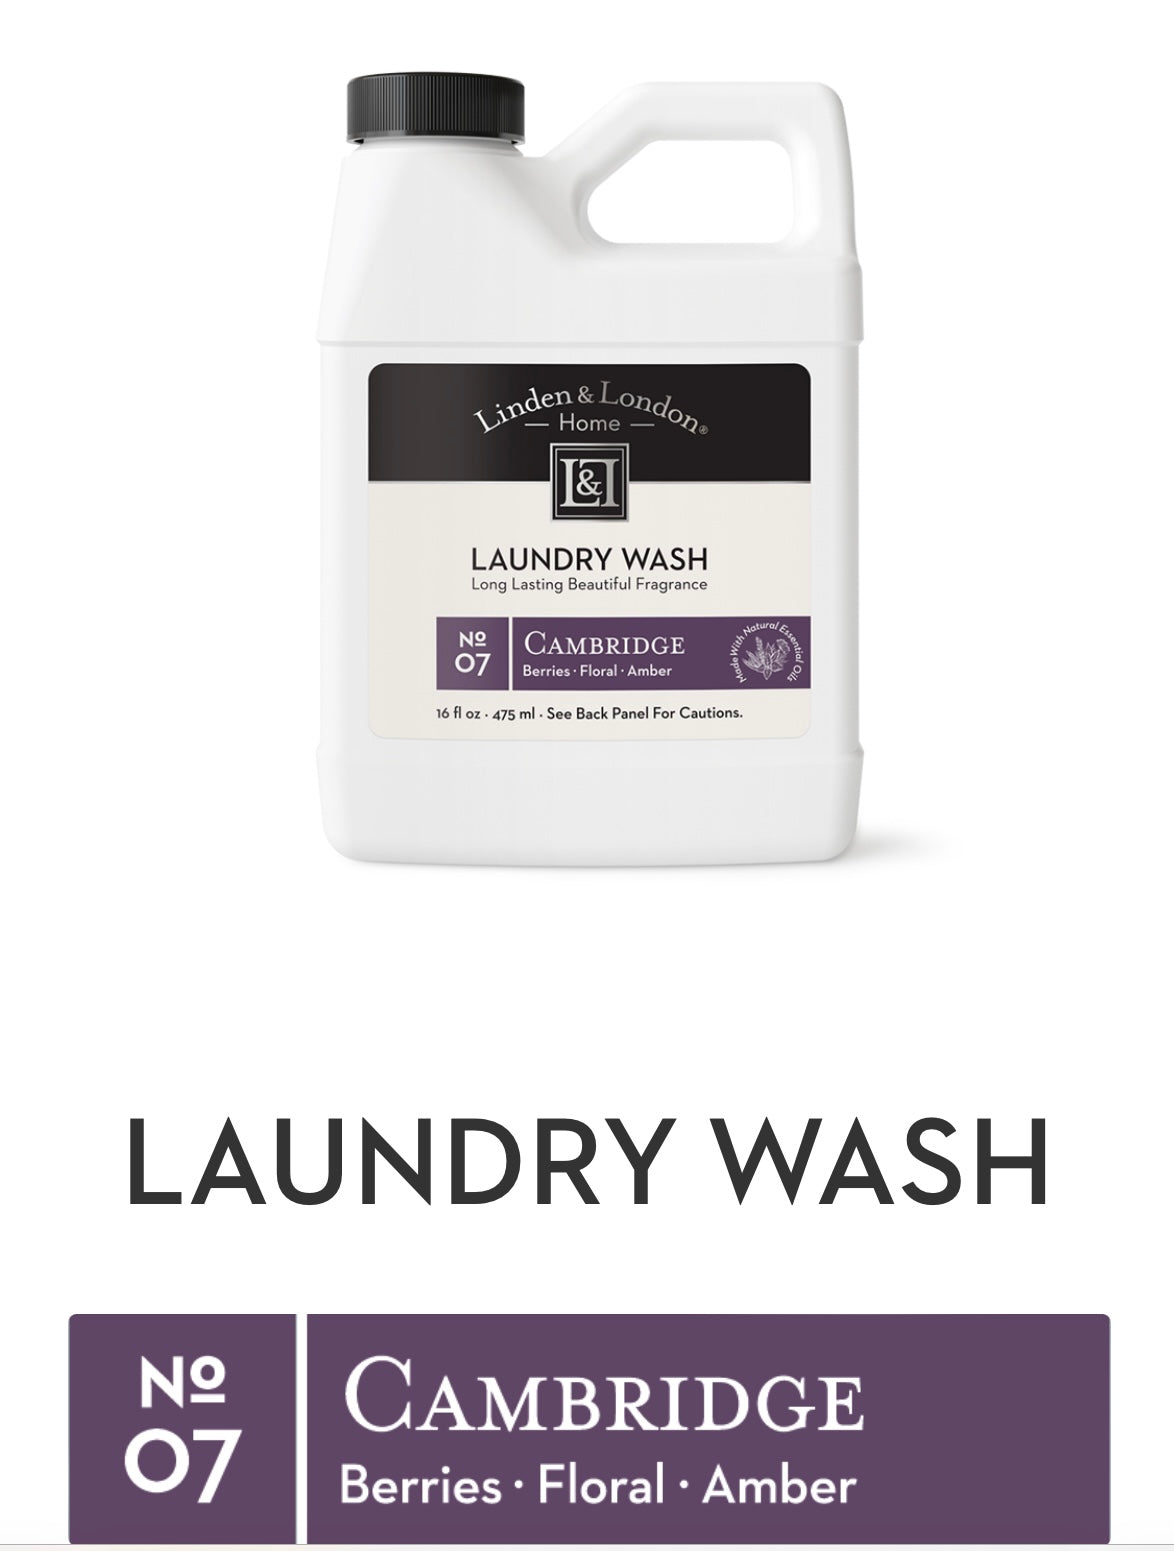 Laundry Wash 16 oz